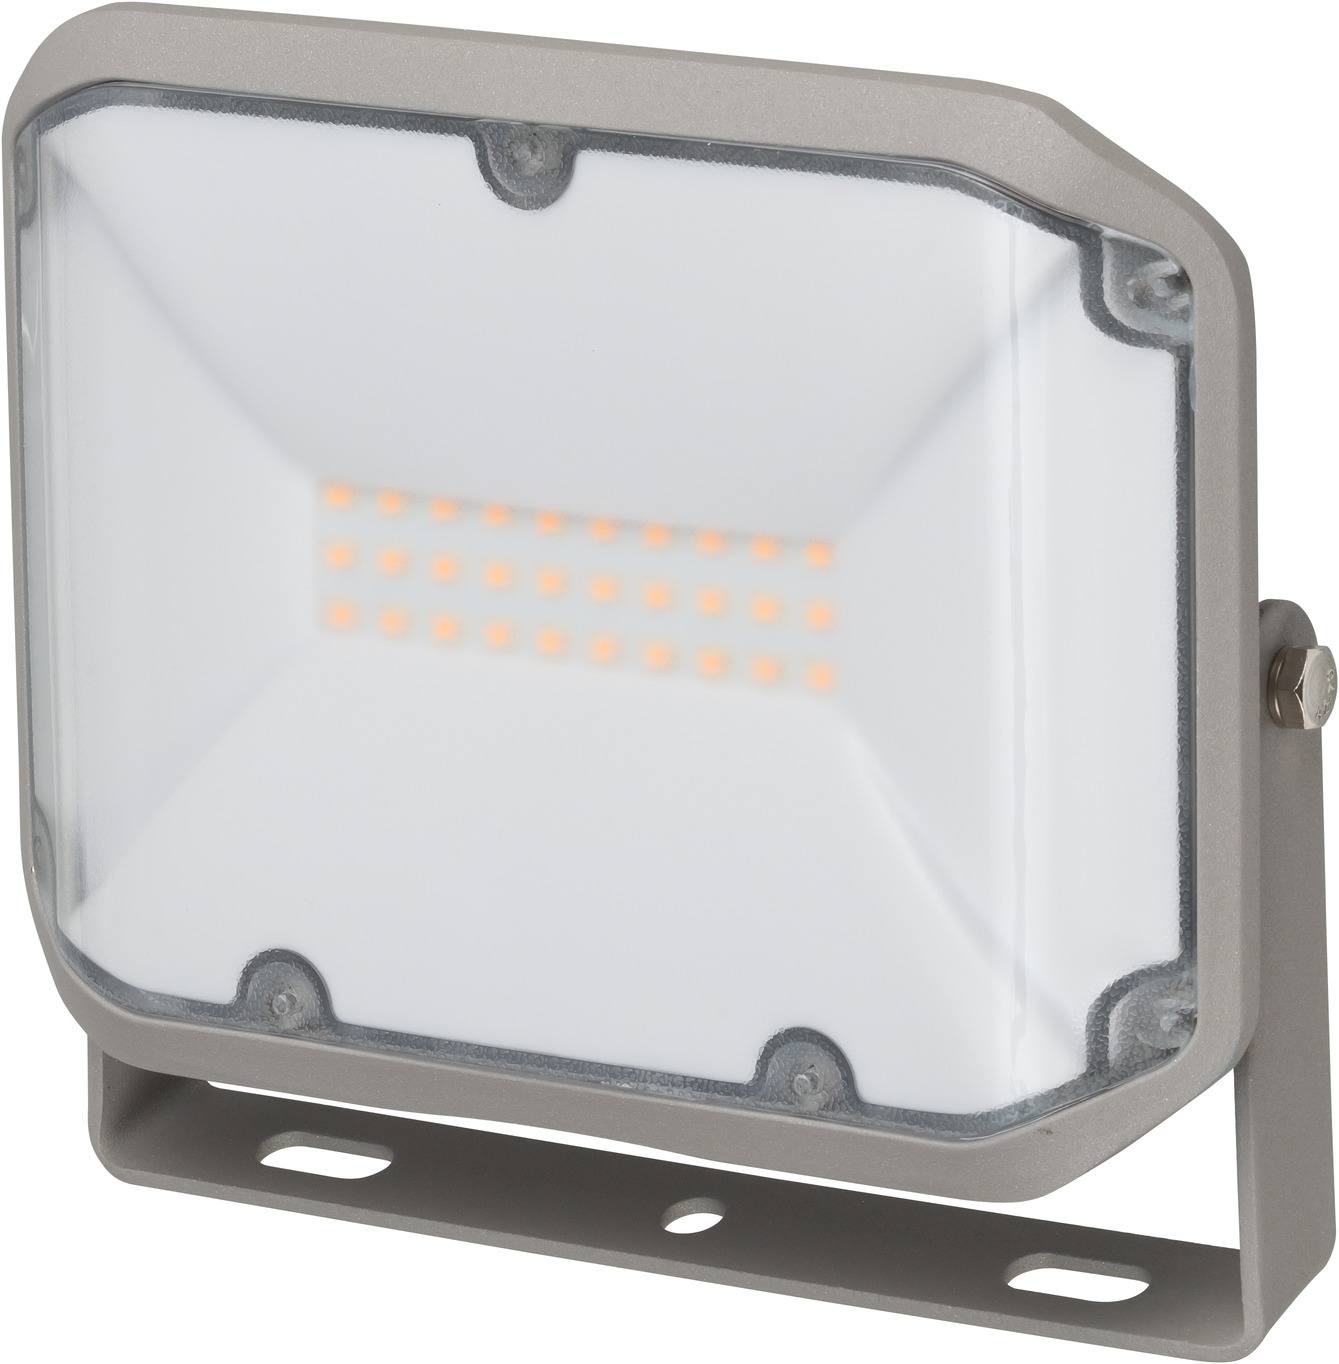 LED Strahler AL 2050 20W, 2080lm, IP44 | brennenstuhl®